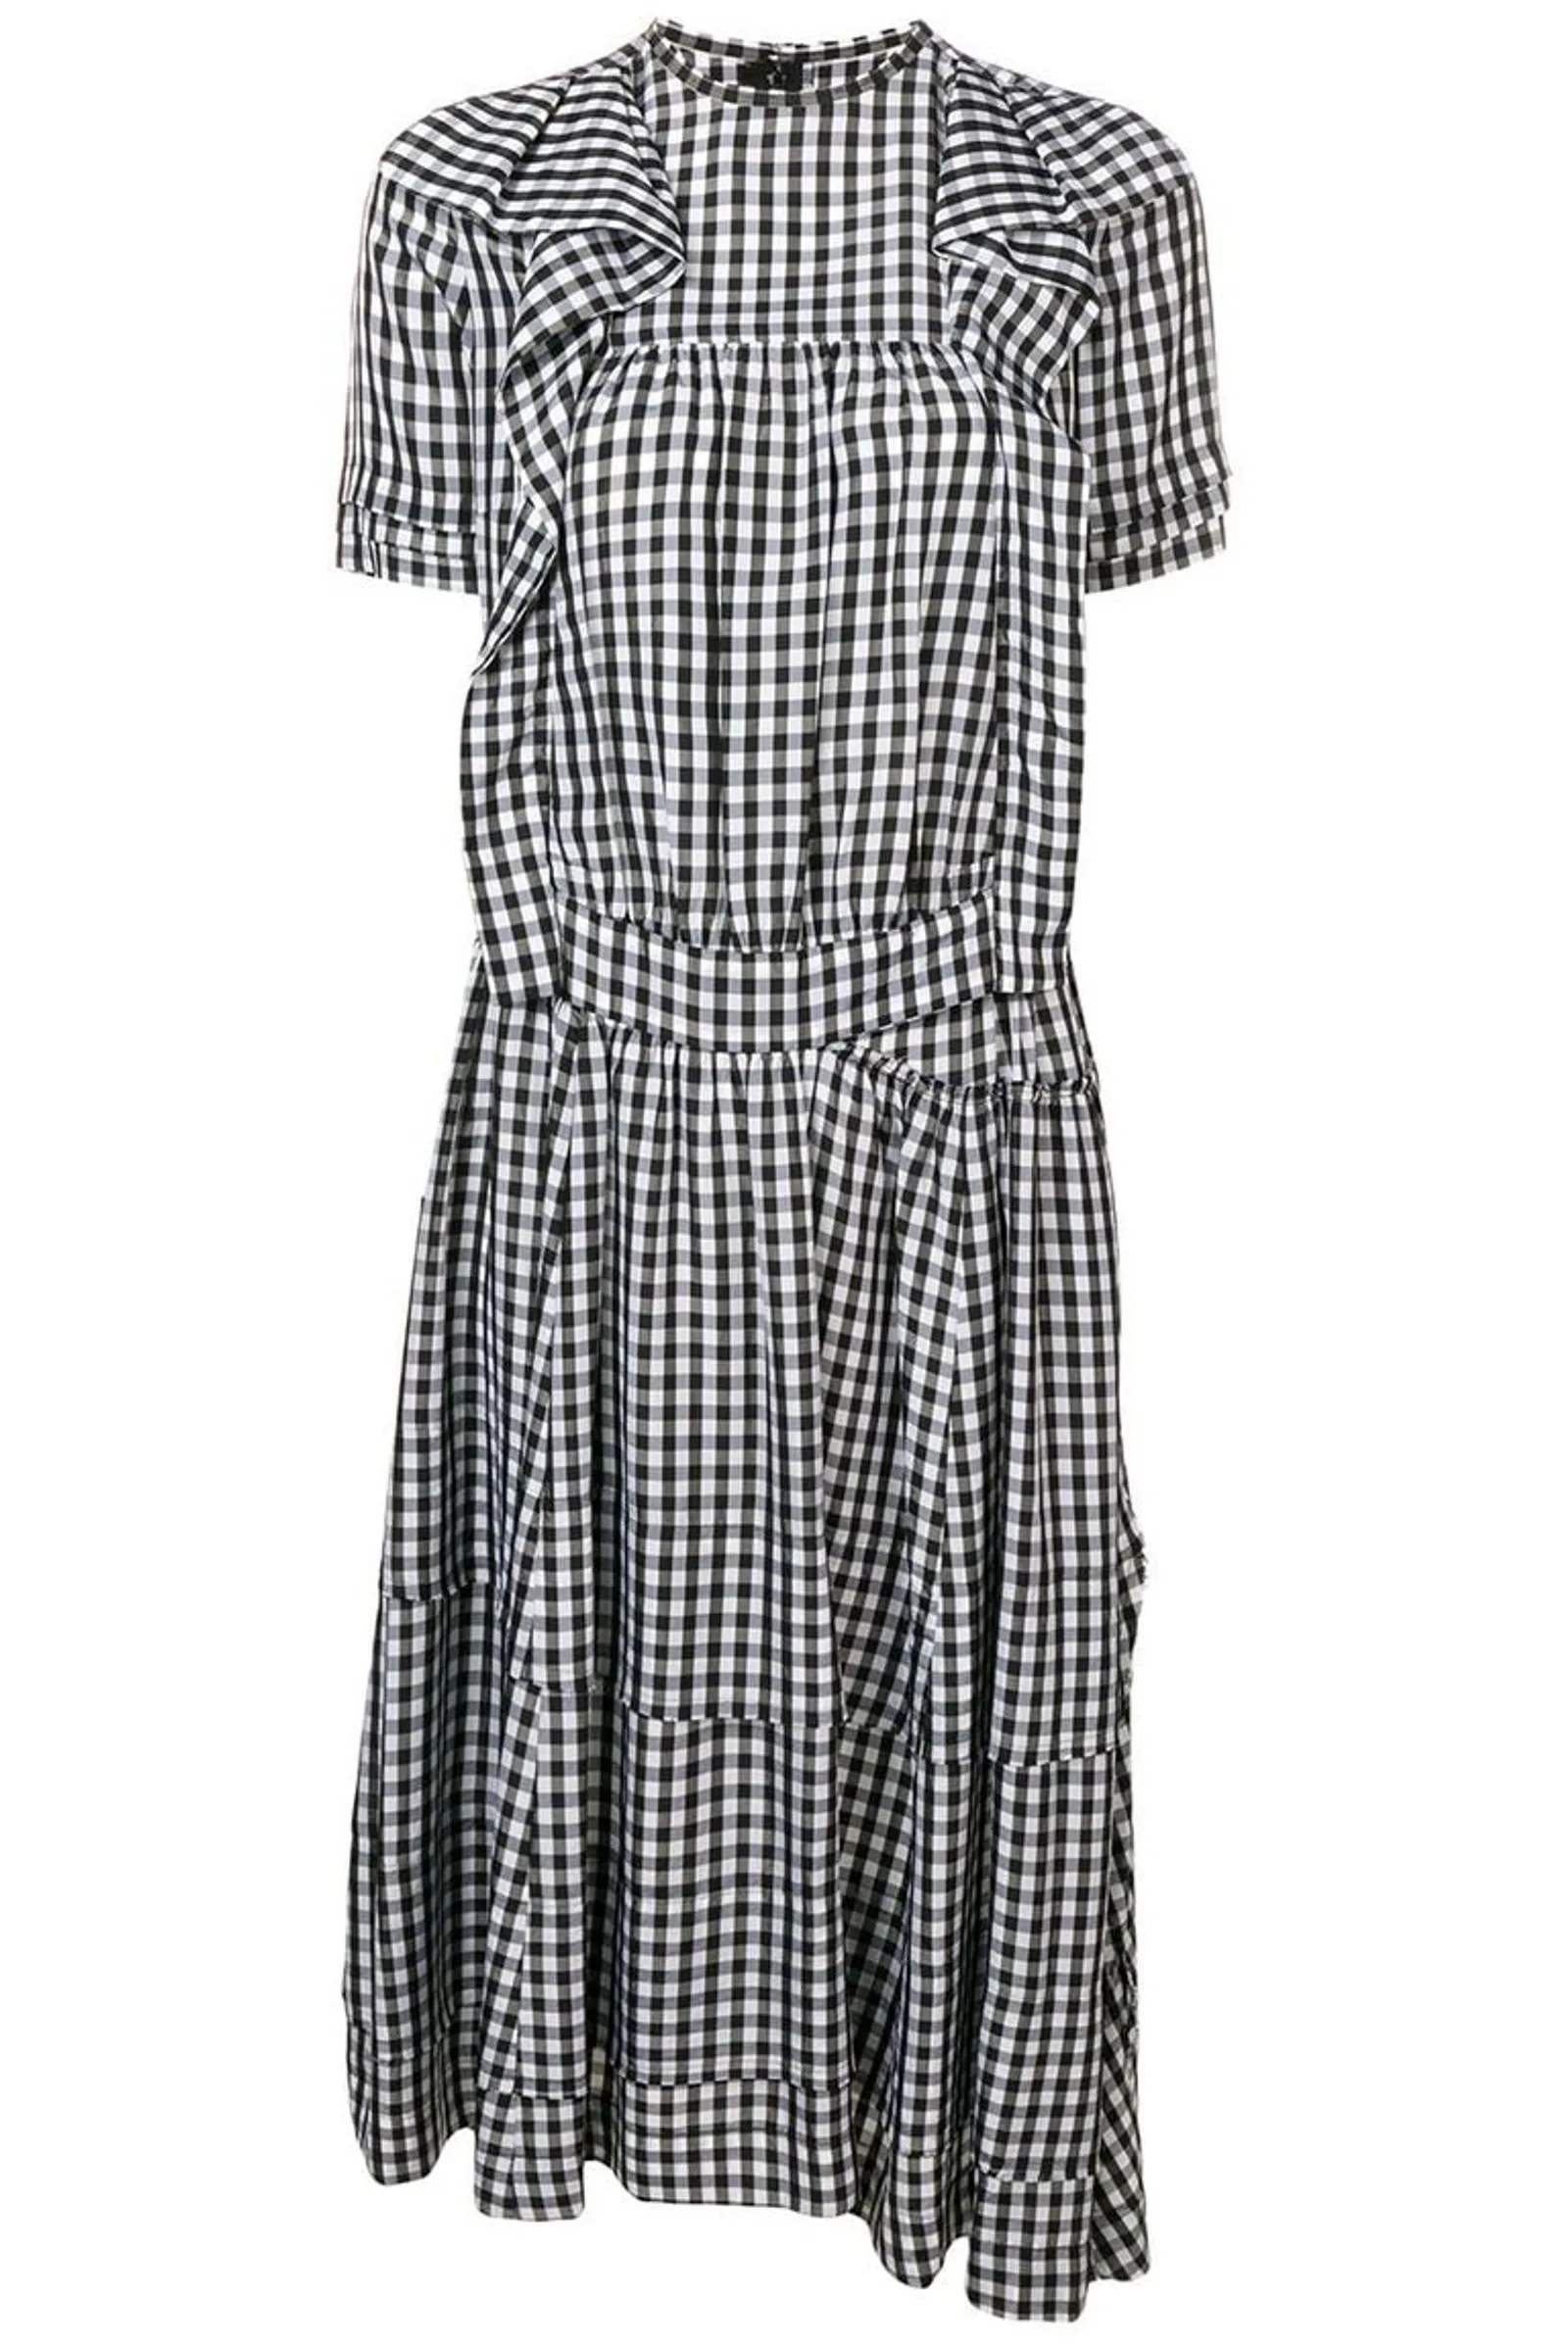 #PopbelaOOTD: Rekomendasi Gingham Dress untuk Akhir Pekan